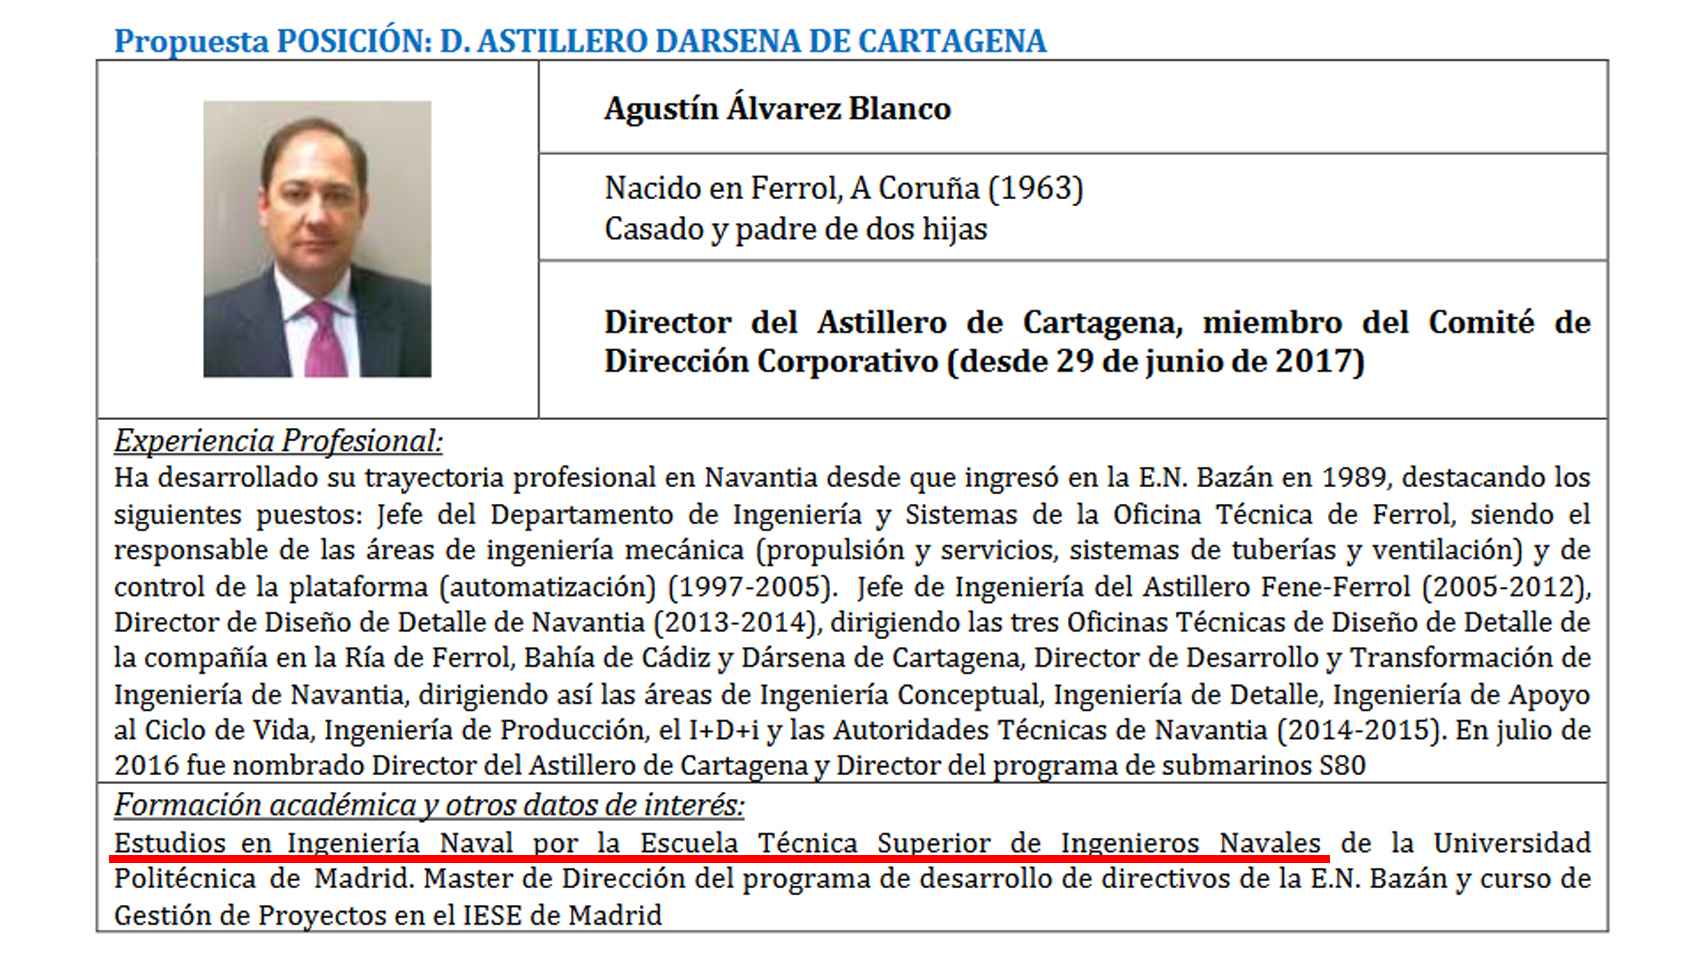 La modificación del currículo académico del director del astillero de Cartagena